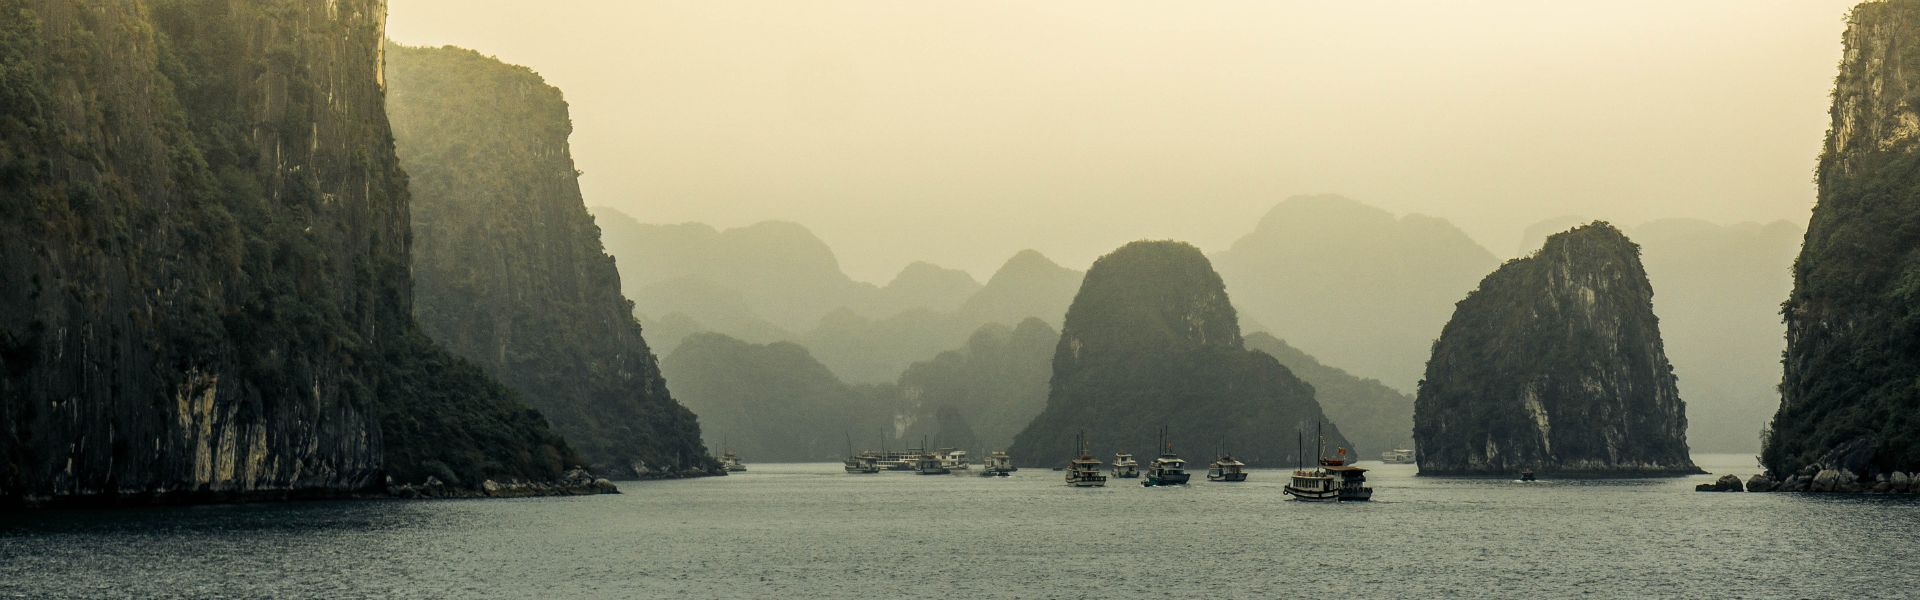 Halong Bucht: Sehenswürdigkeiten und Aktivitäten | Vietnam Reisen